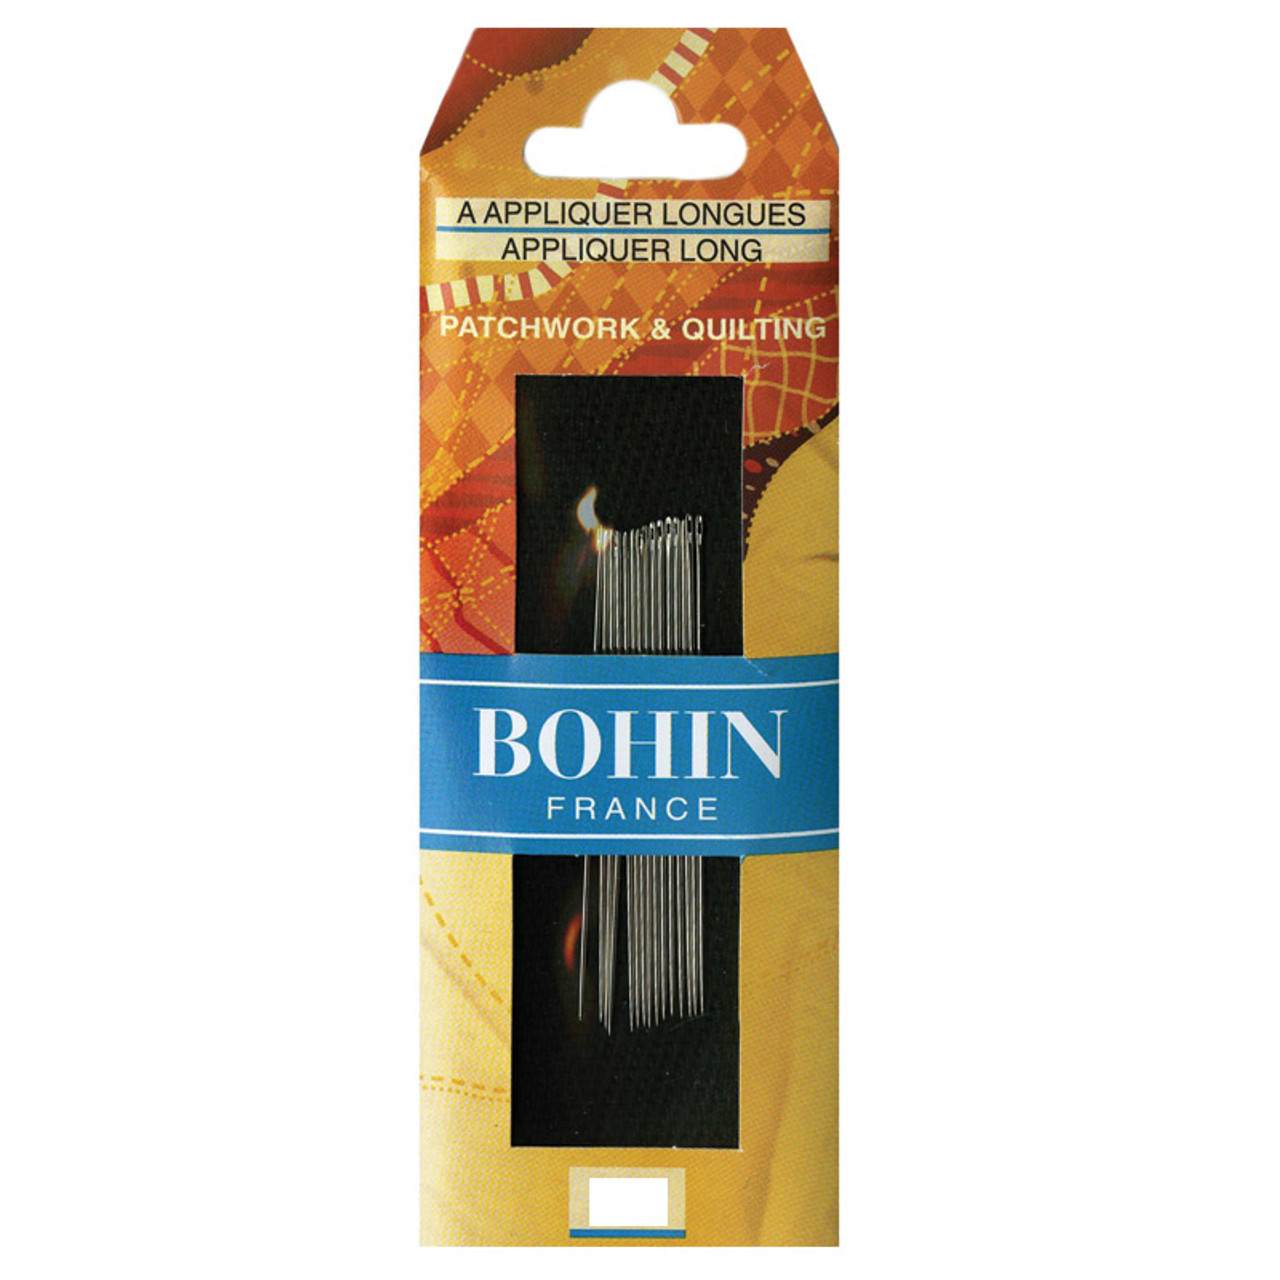 Bohin Applique Long Needles - Size 9